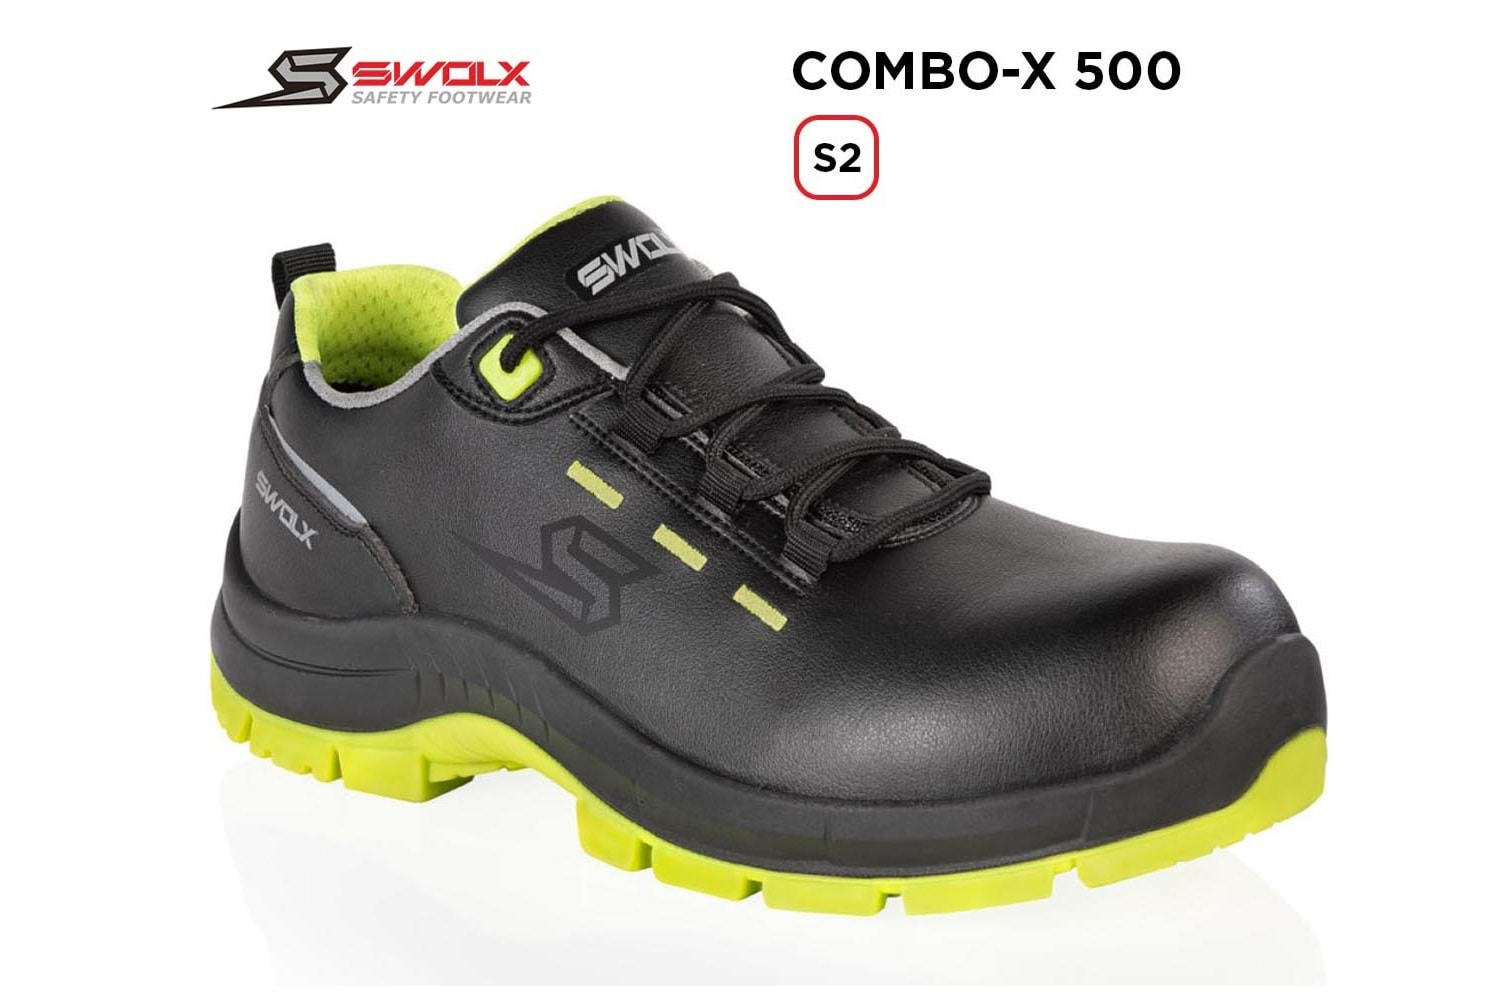 Swolx İş Ayakkabısı - Combo-X 500 S2